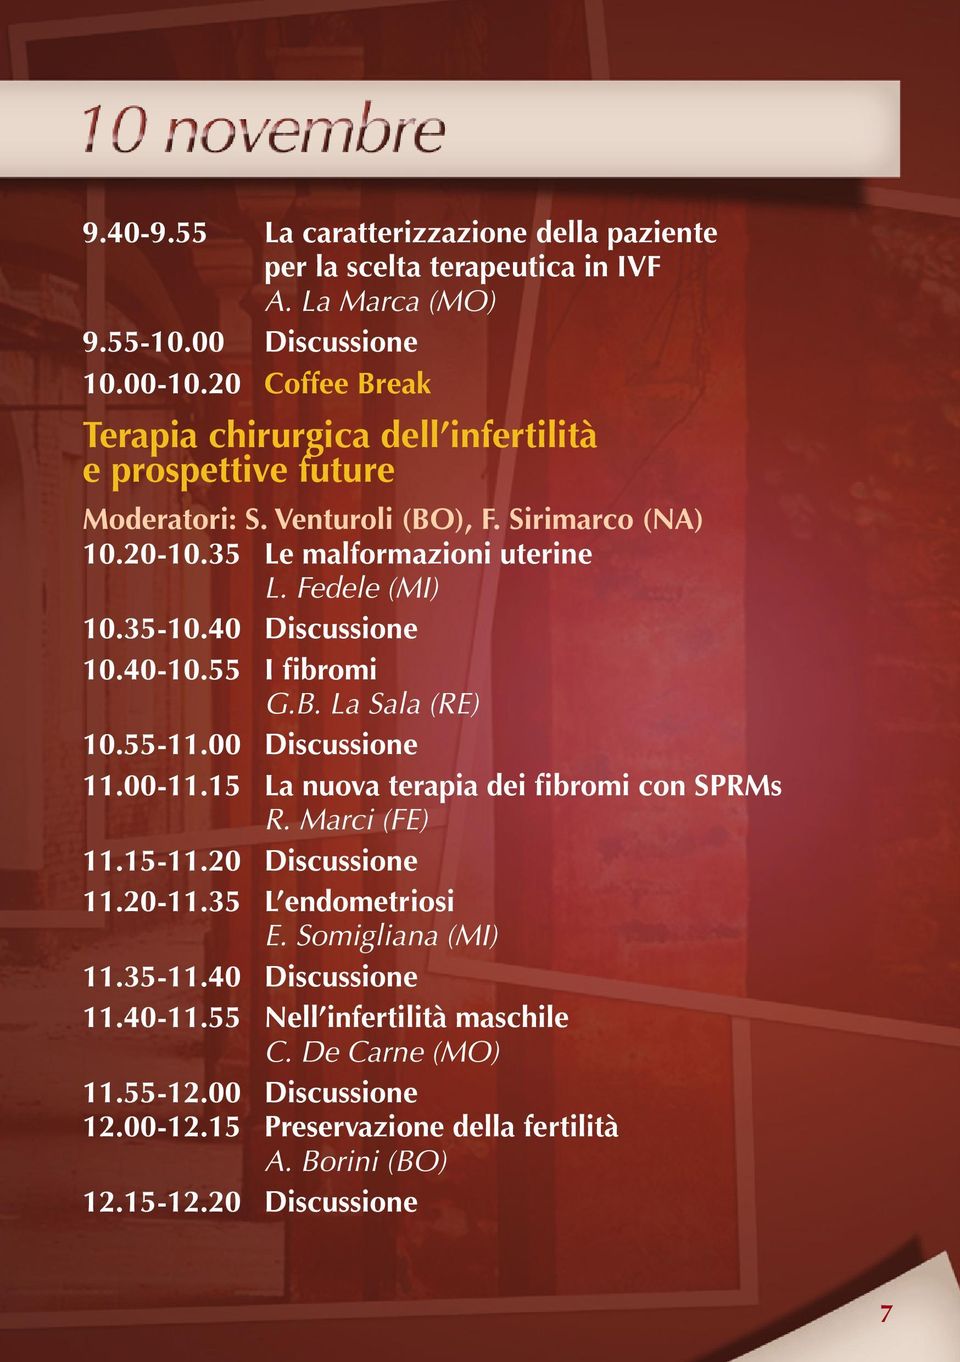 35-10.40 Discussione 10.40-10.55 I fibromi G.B. La Sala (RE) 10.55-11.00 Discussione 11.00-11.15 La nuova terapia dei fibromi con SPRMs R. Marci (FE) 11.15-11.20 Discussione 11.